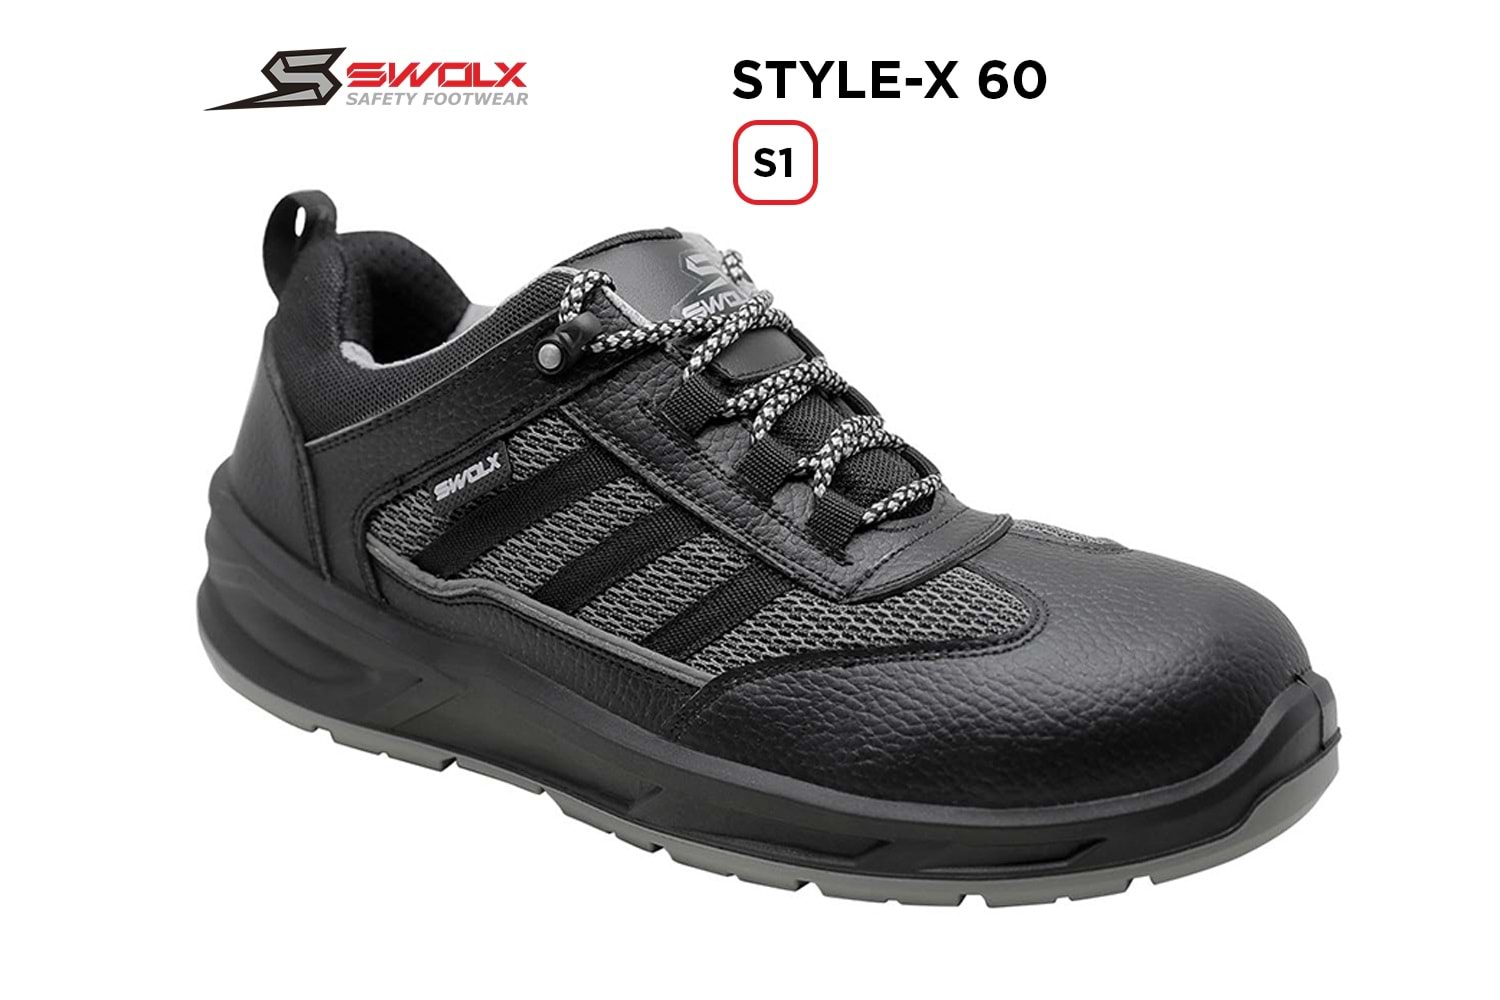 Swolx İş Ayakkabısı - Style-X 60 S1 - 44